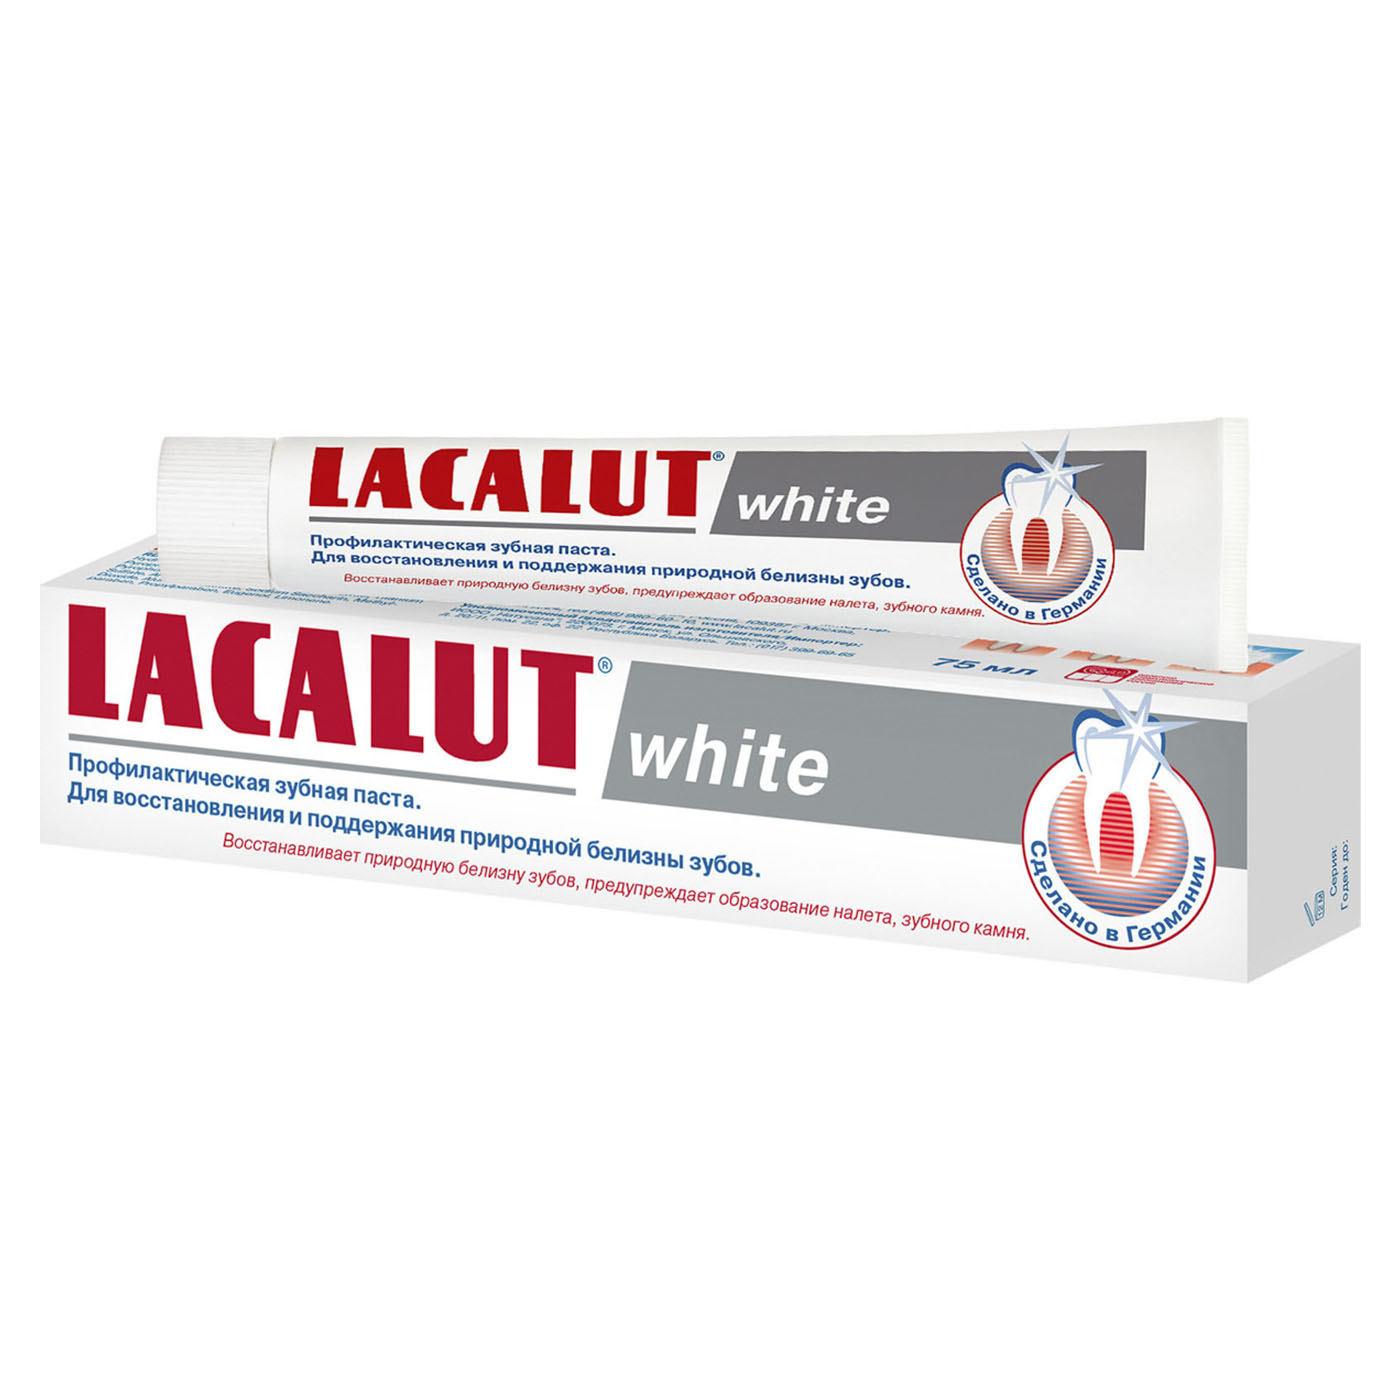 Lacalut Зубная паста Уайт 75 мл (Lacalut, Зубные пасты) lacalut набор зубная щетка уайт 2 штуки lacalut зубные щётки